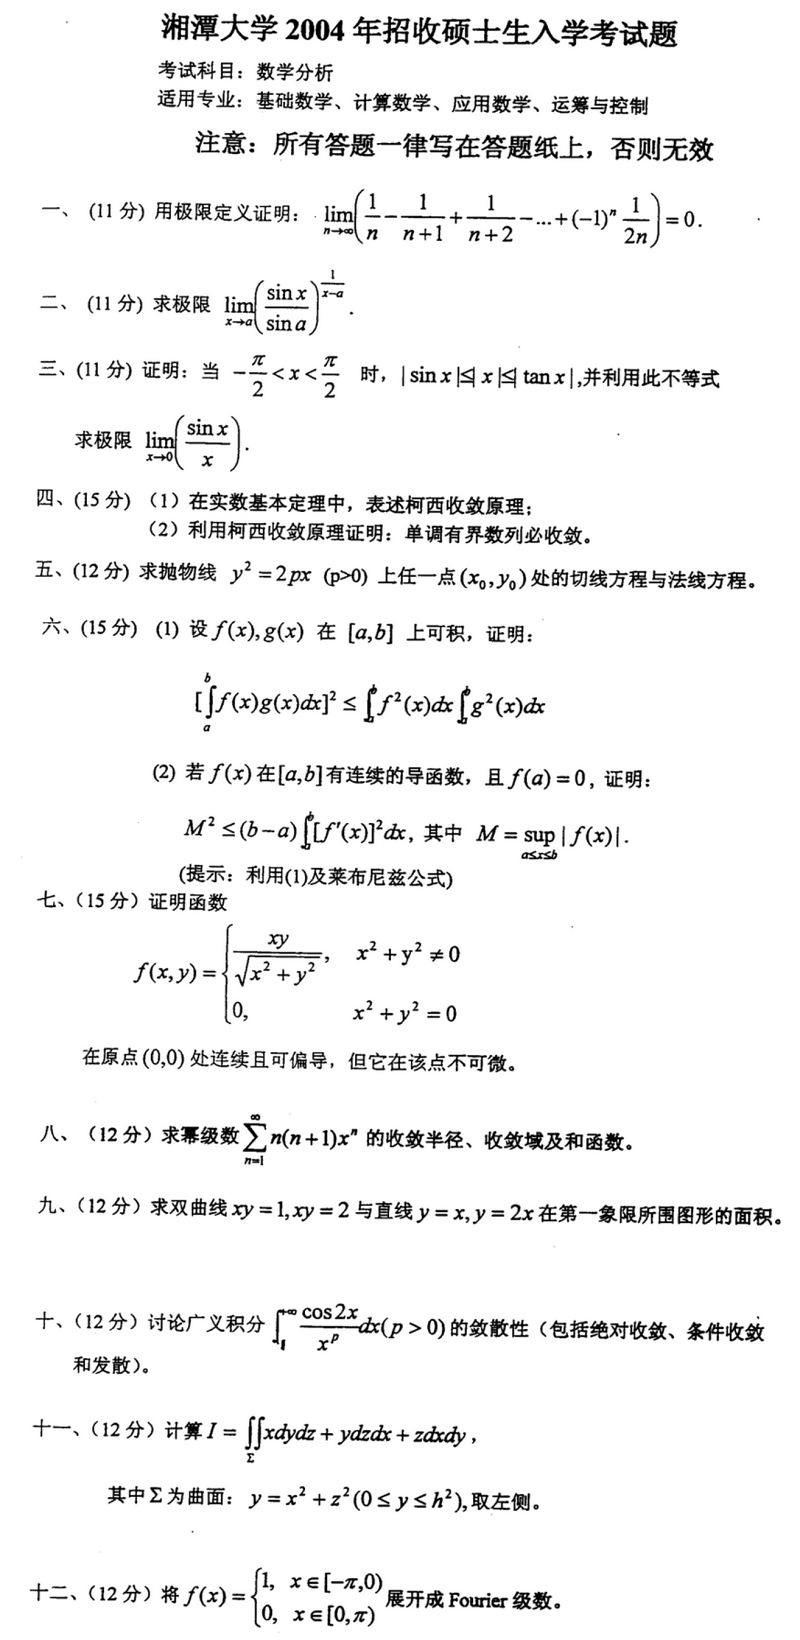 2004湘潭大学考研数学真题（数学分析）.png